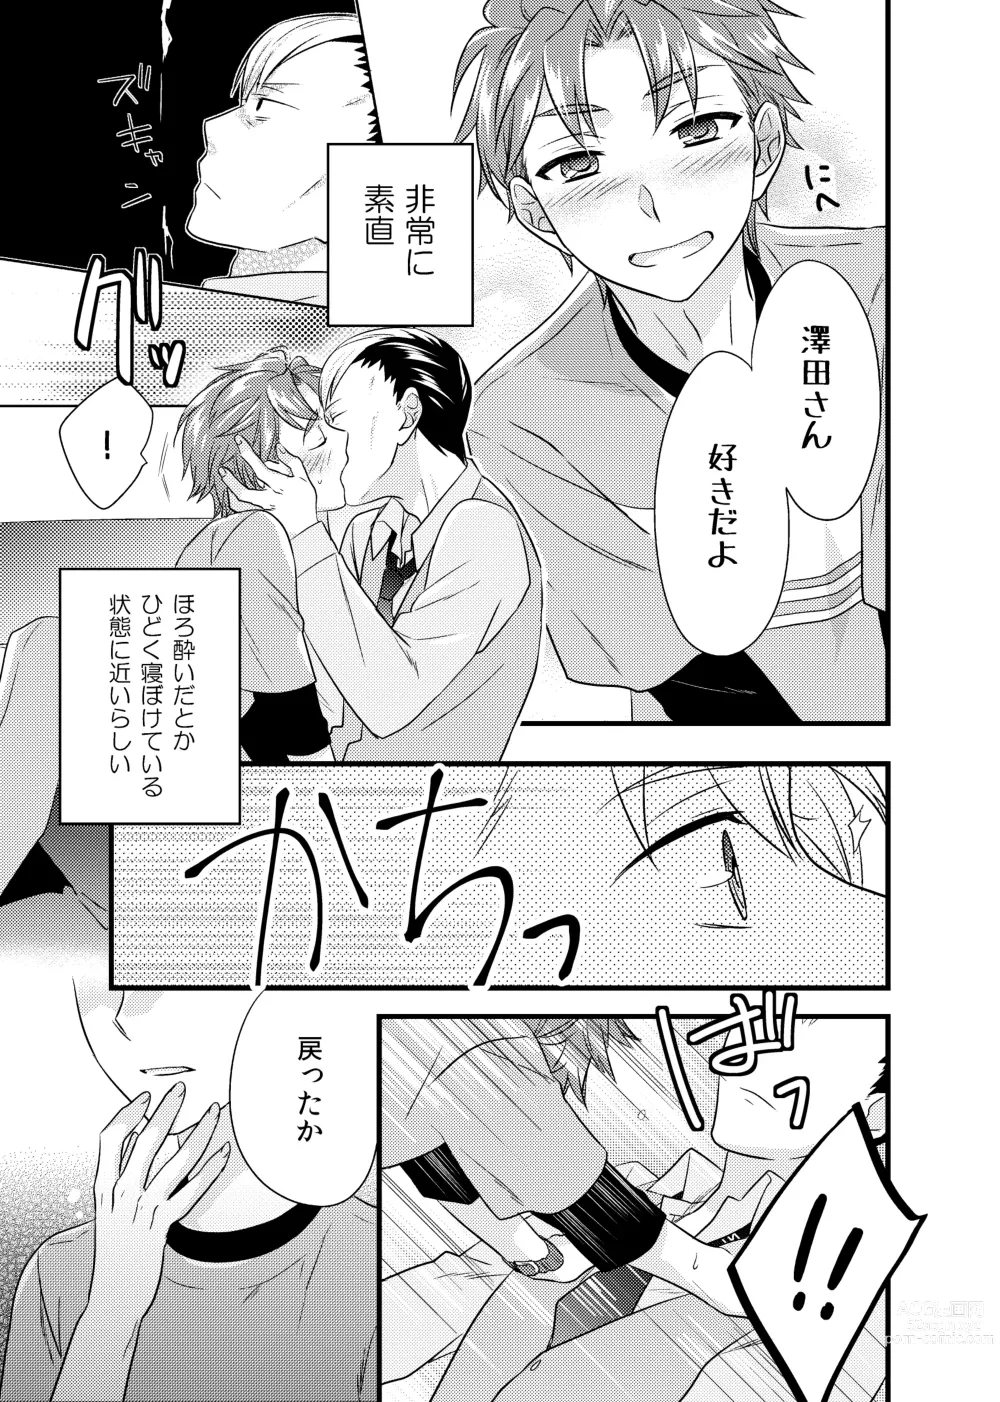 Page 6 of doujinshi sonna konnano futarigoto